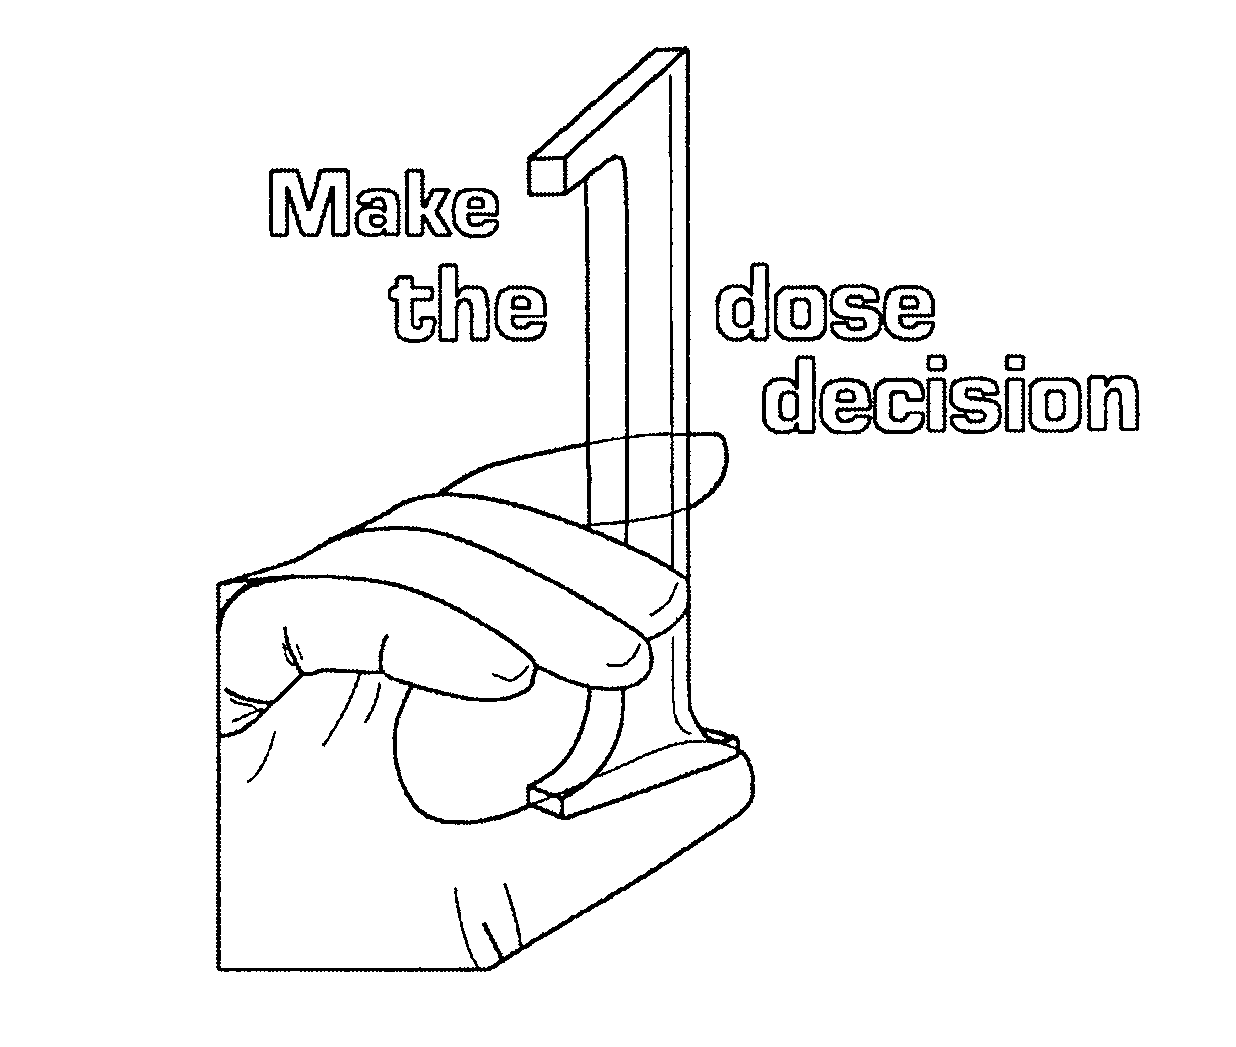  MAKE THE 1 DOSE DECISION